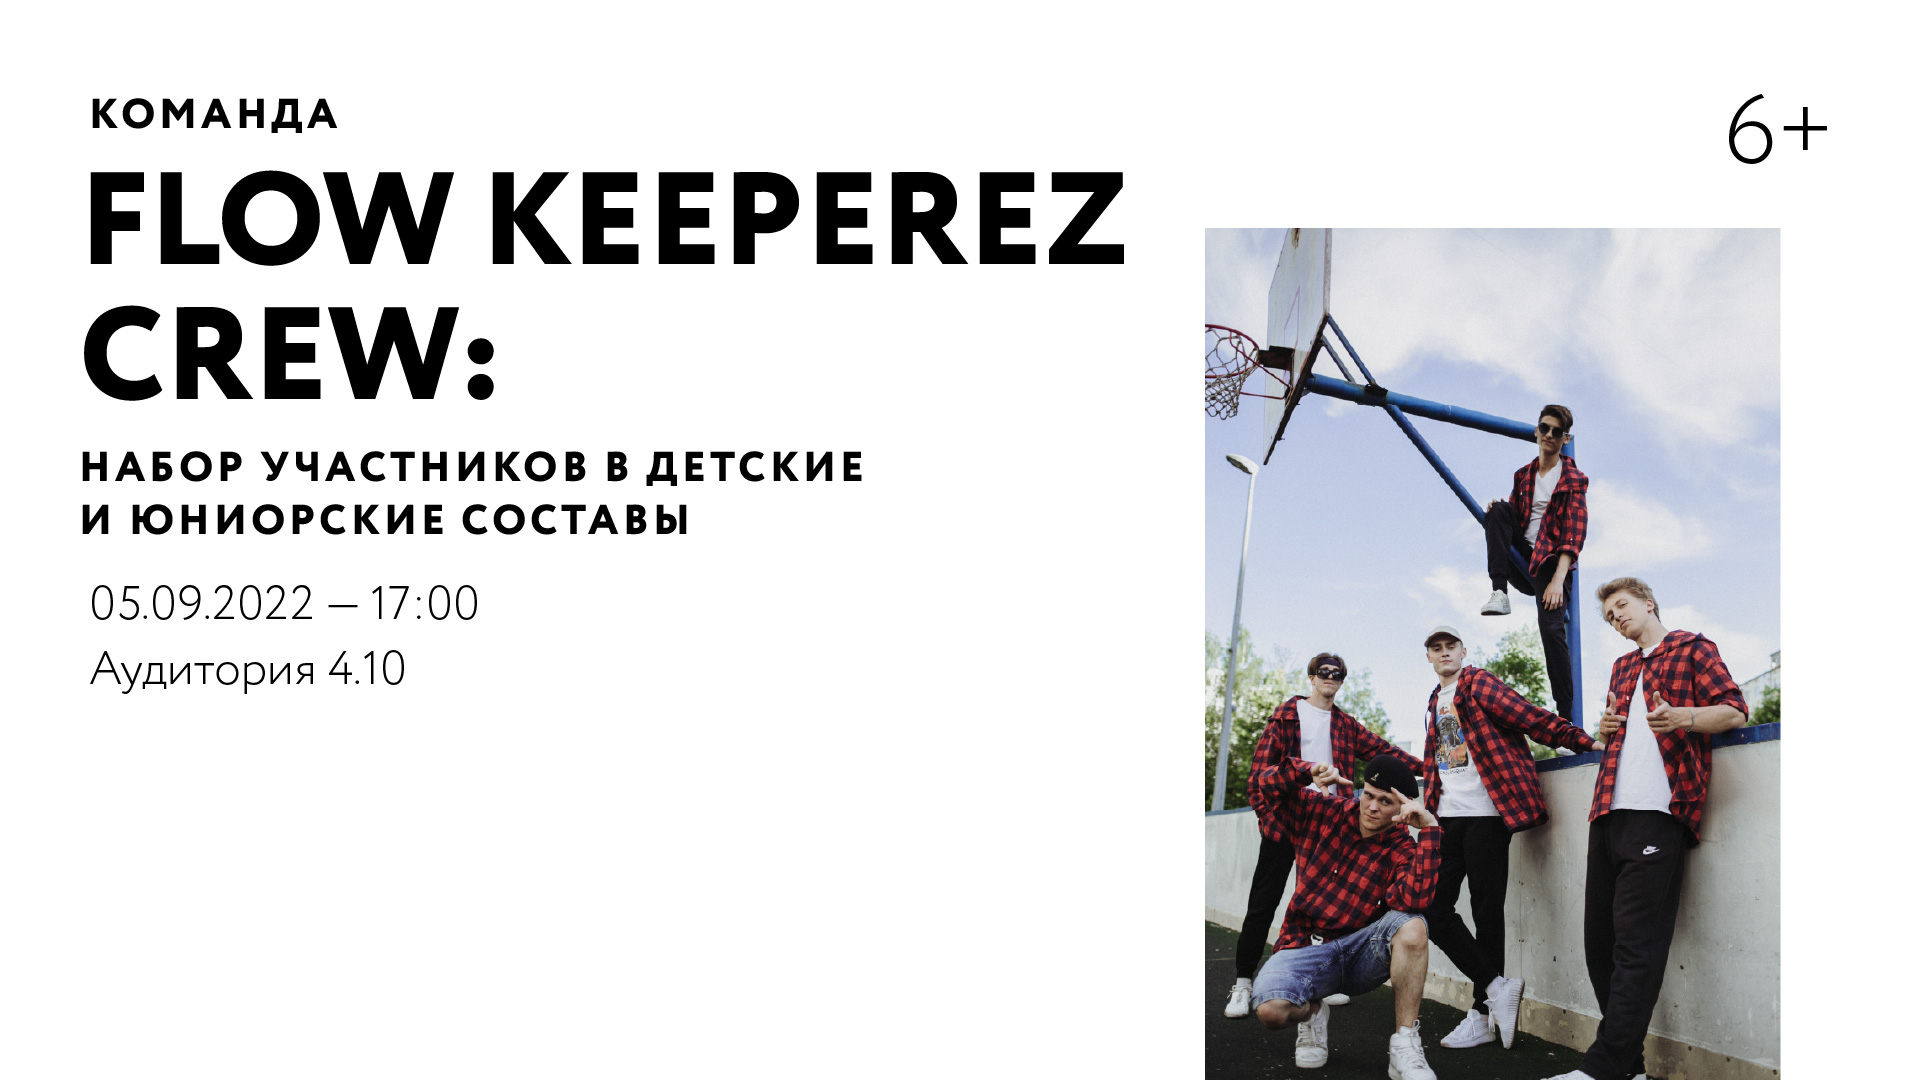 Команда FLOW KEEPEREZ CREW: набор участников в детские и юниорские составы